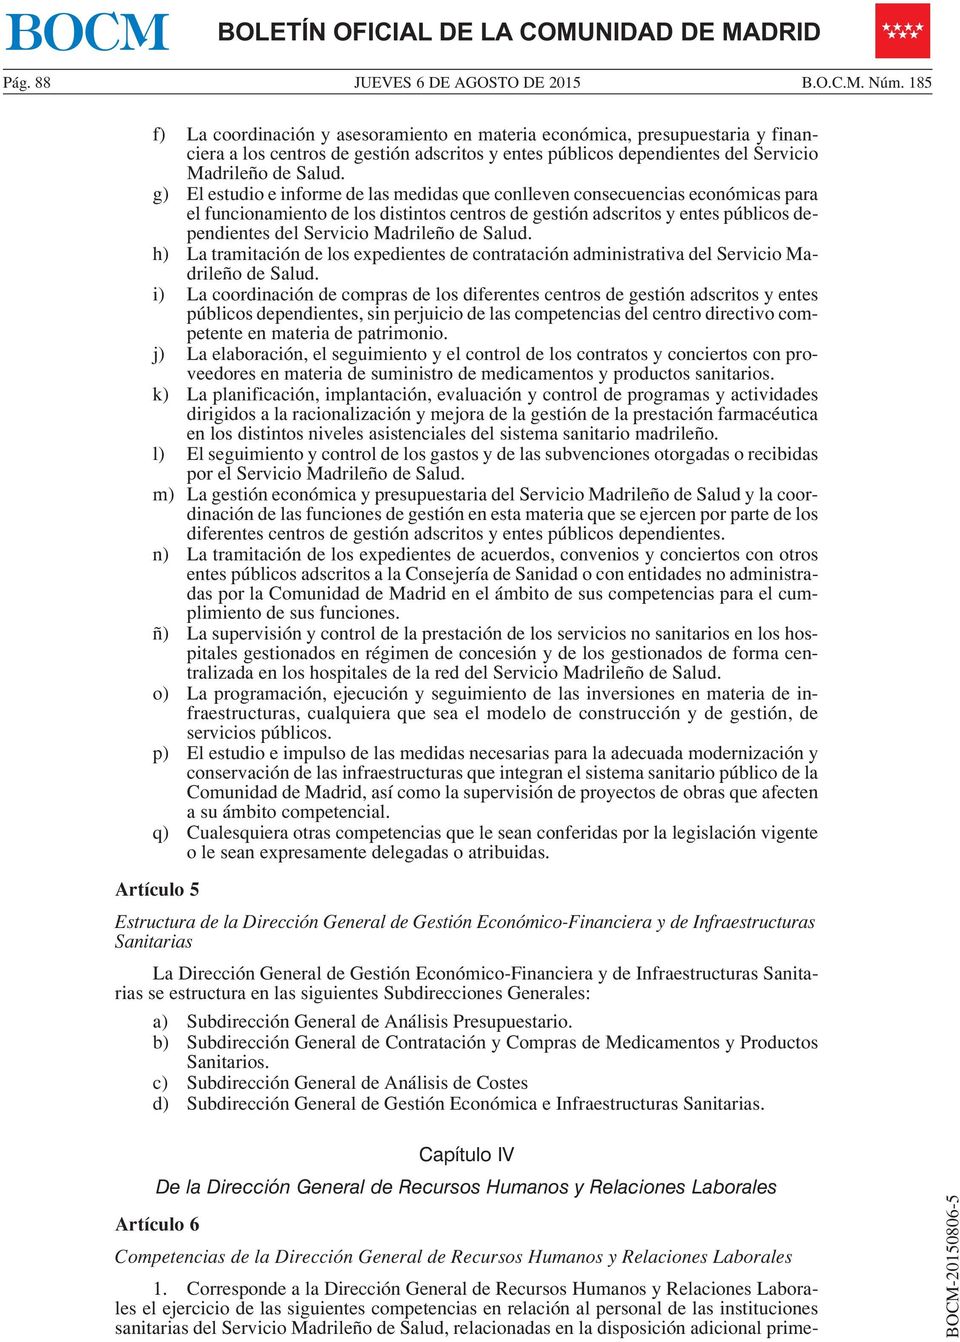 g) El estudio e informe de las medidas que conlleven consecuencias económicas para el funcionamiento de los distintos centros de gestión adscritos y entes públicos dependientes del Servicio Madrileño